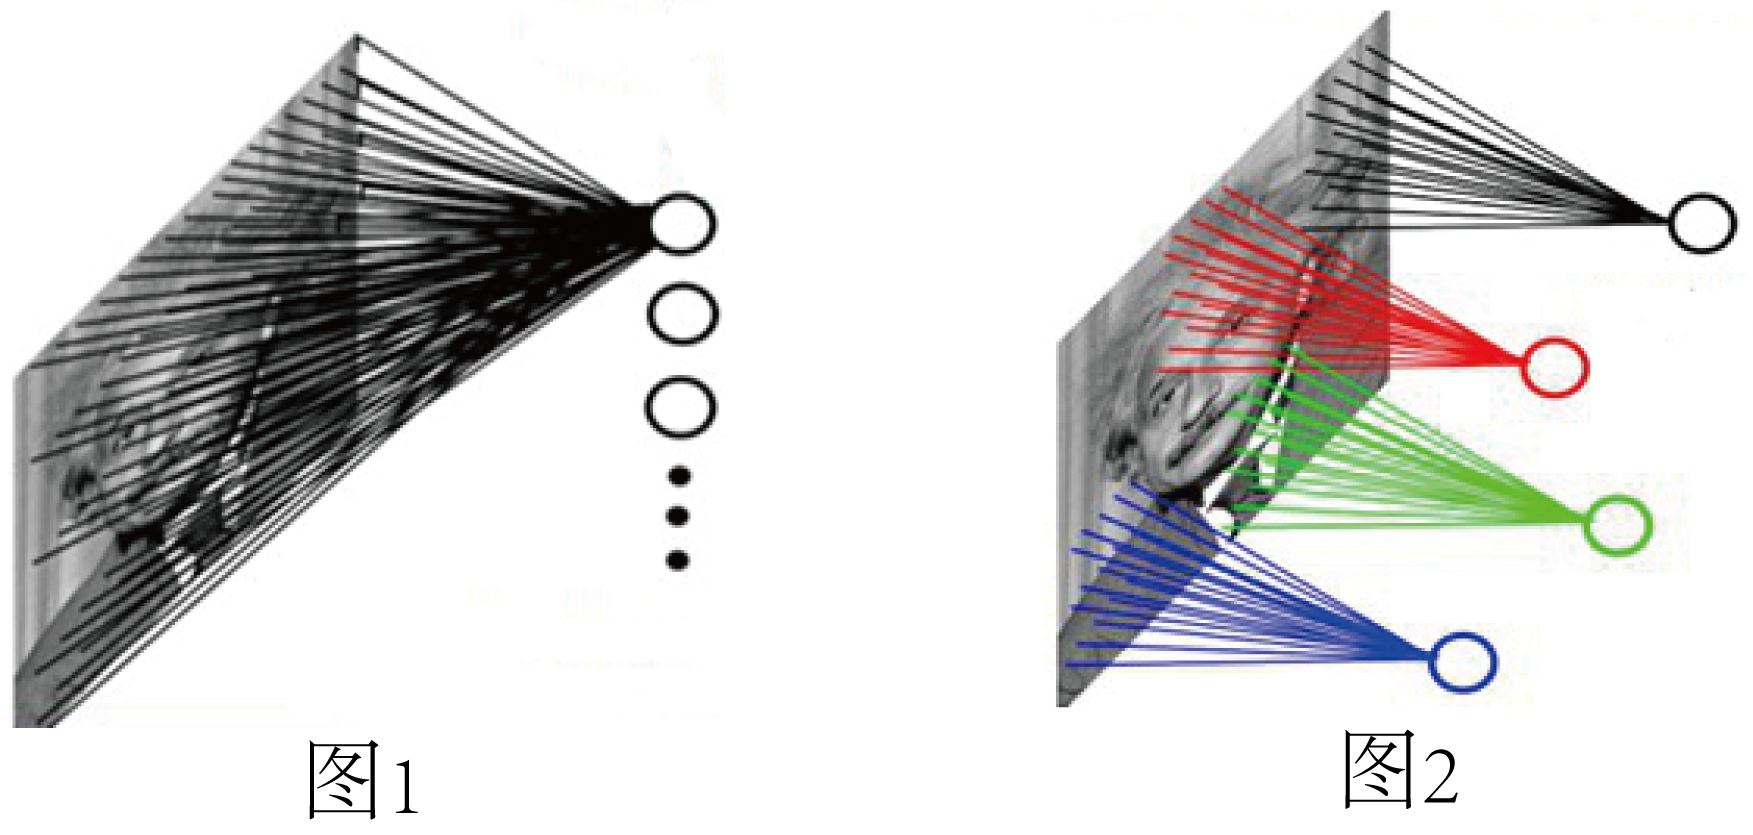 基于时空建模的动态图卷积神经网络